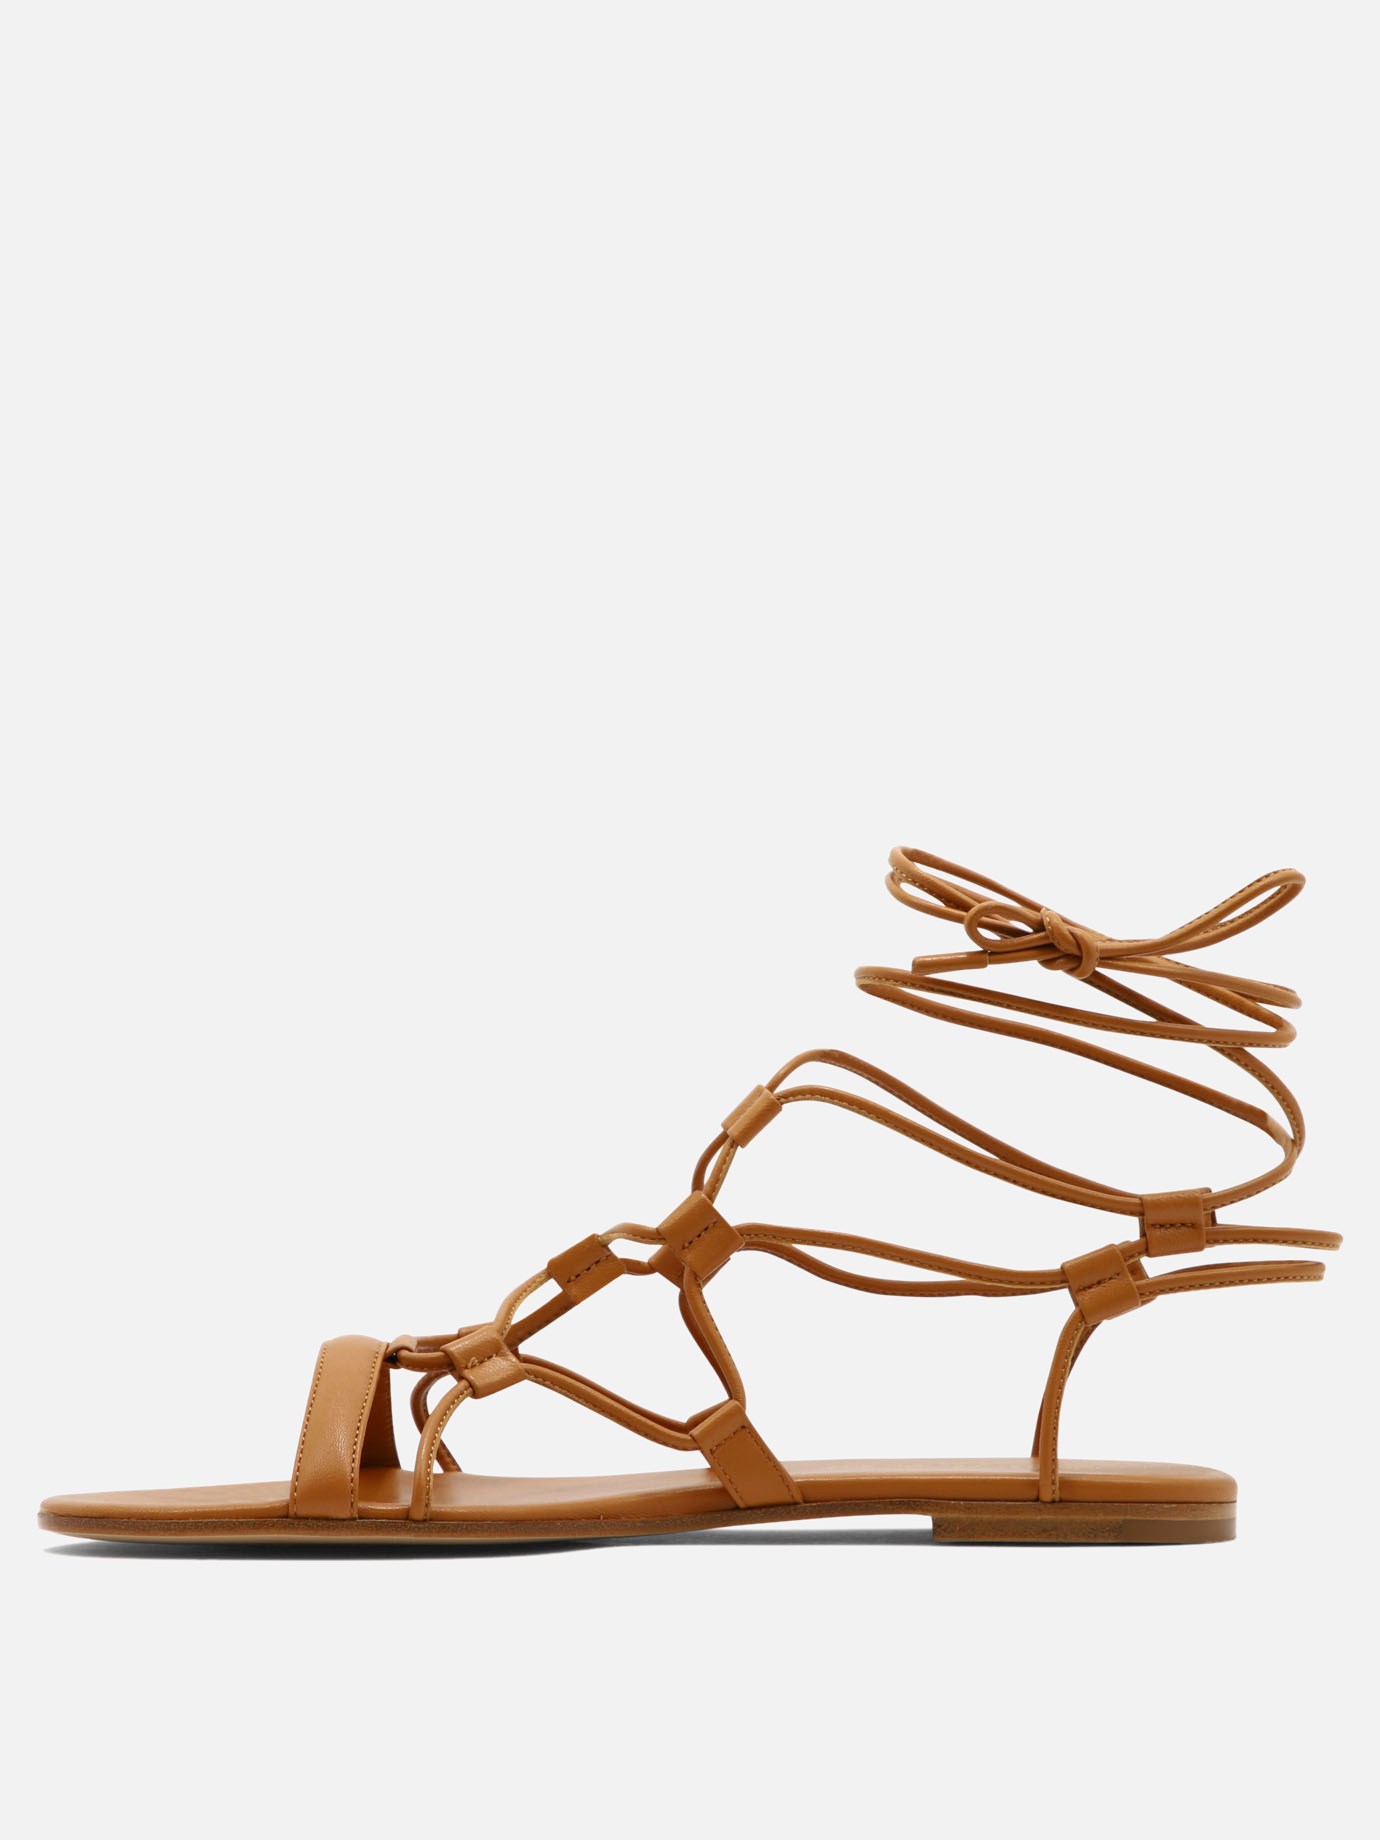  Giza  sandals by Gianvito Rossi